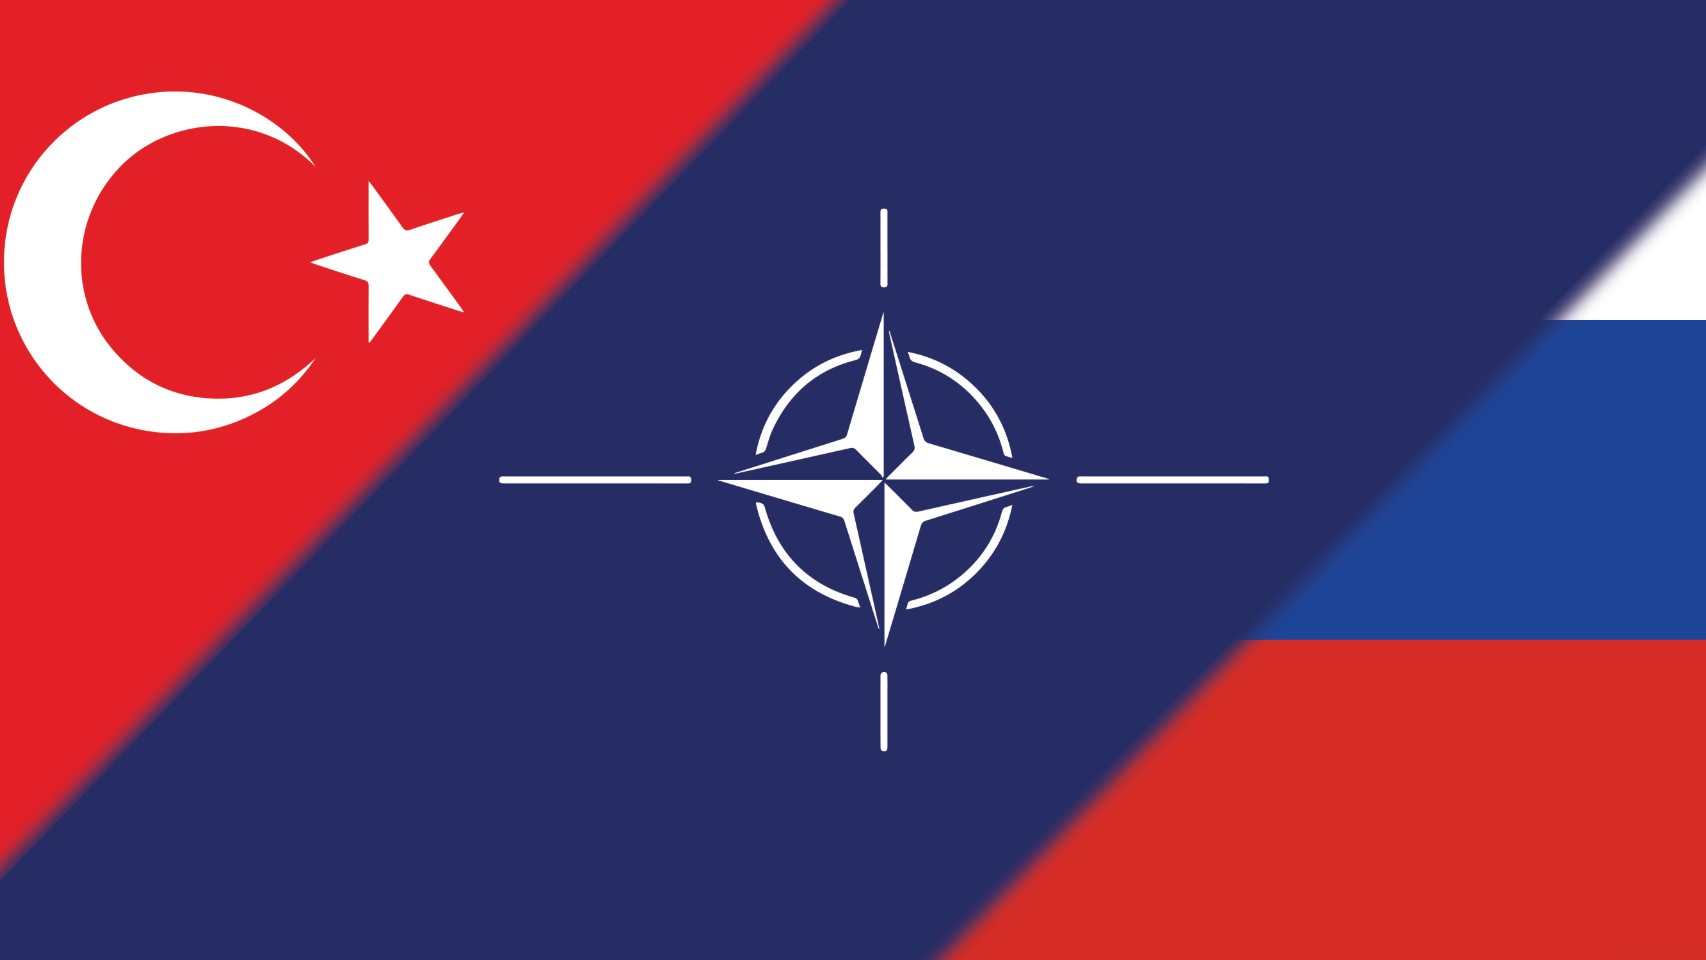 Ca ngợi mối quan hệ với Thổ Nhĩ Kỳ, Nga thâm sâu: 'NATO chỉ là NATO'